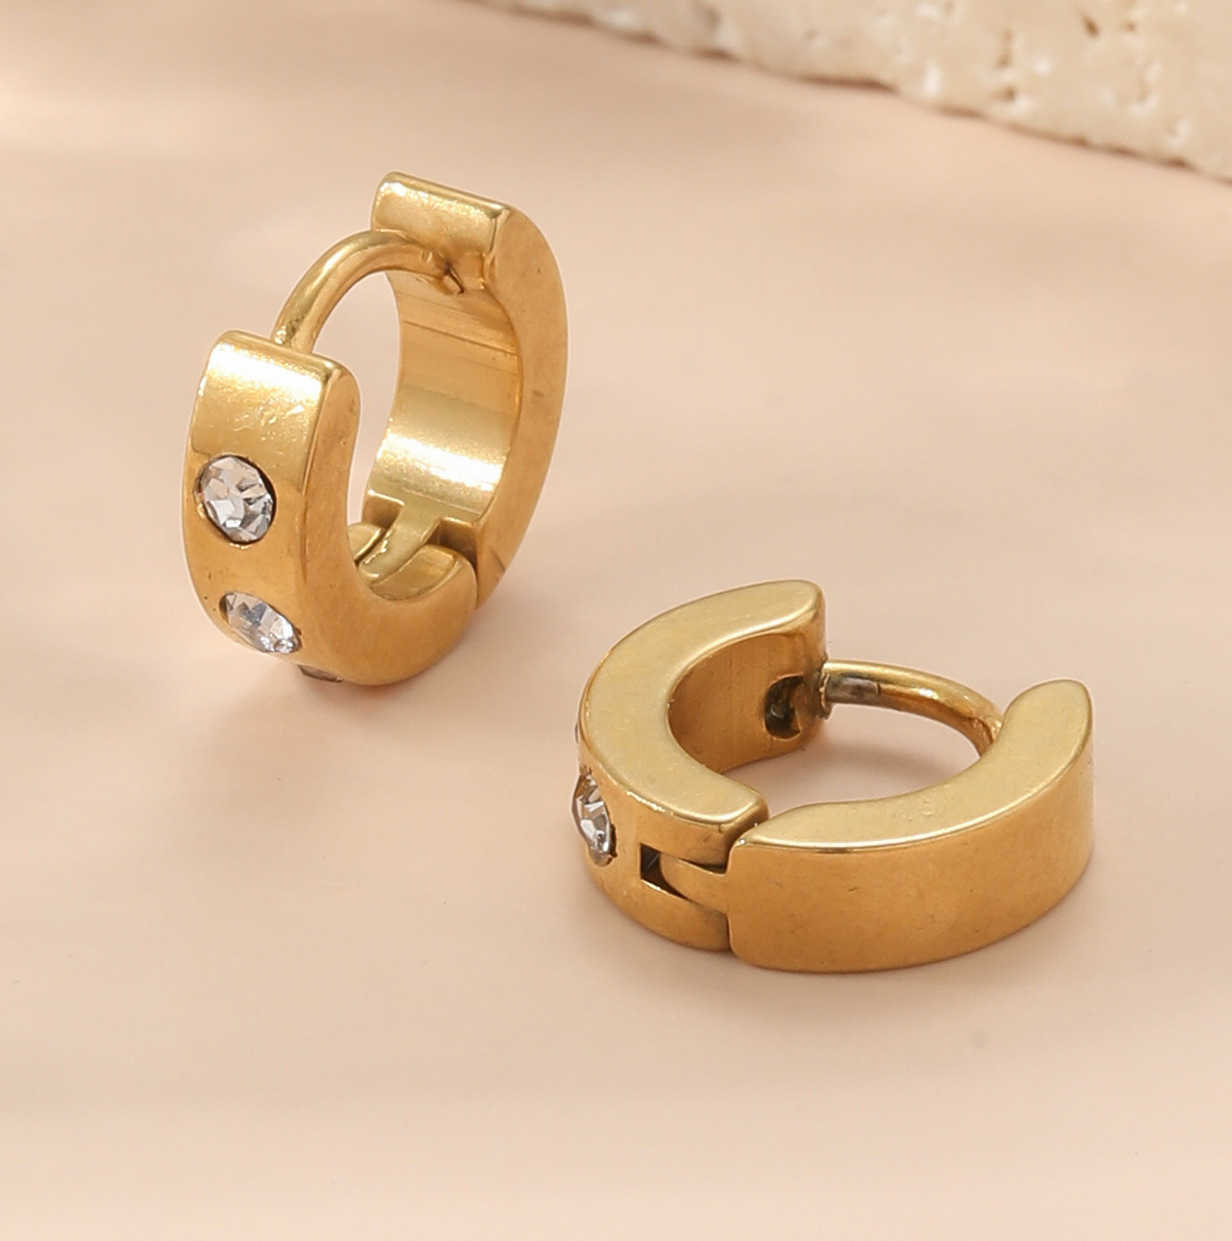 Exquisite Ohrringe mit Diamond Design High Eingelegtes für Frauen in einer einfachen und vielseitigen Persönlichkeit, die mit Cart Originalohrring modisch ist